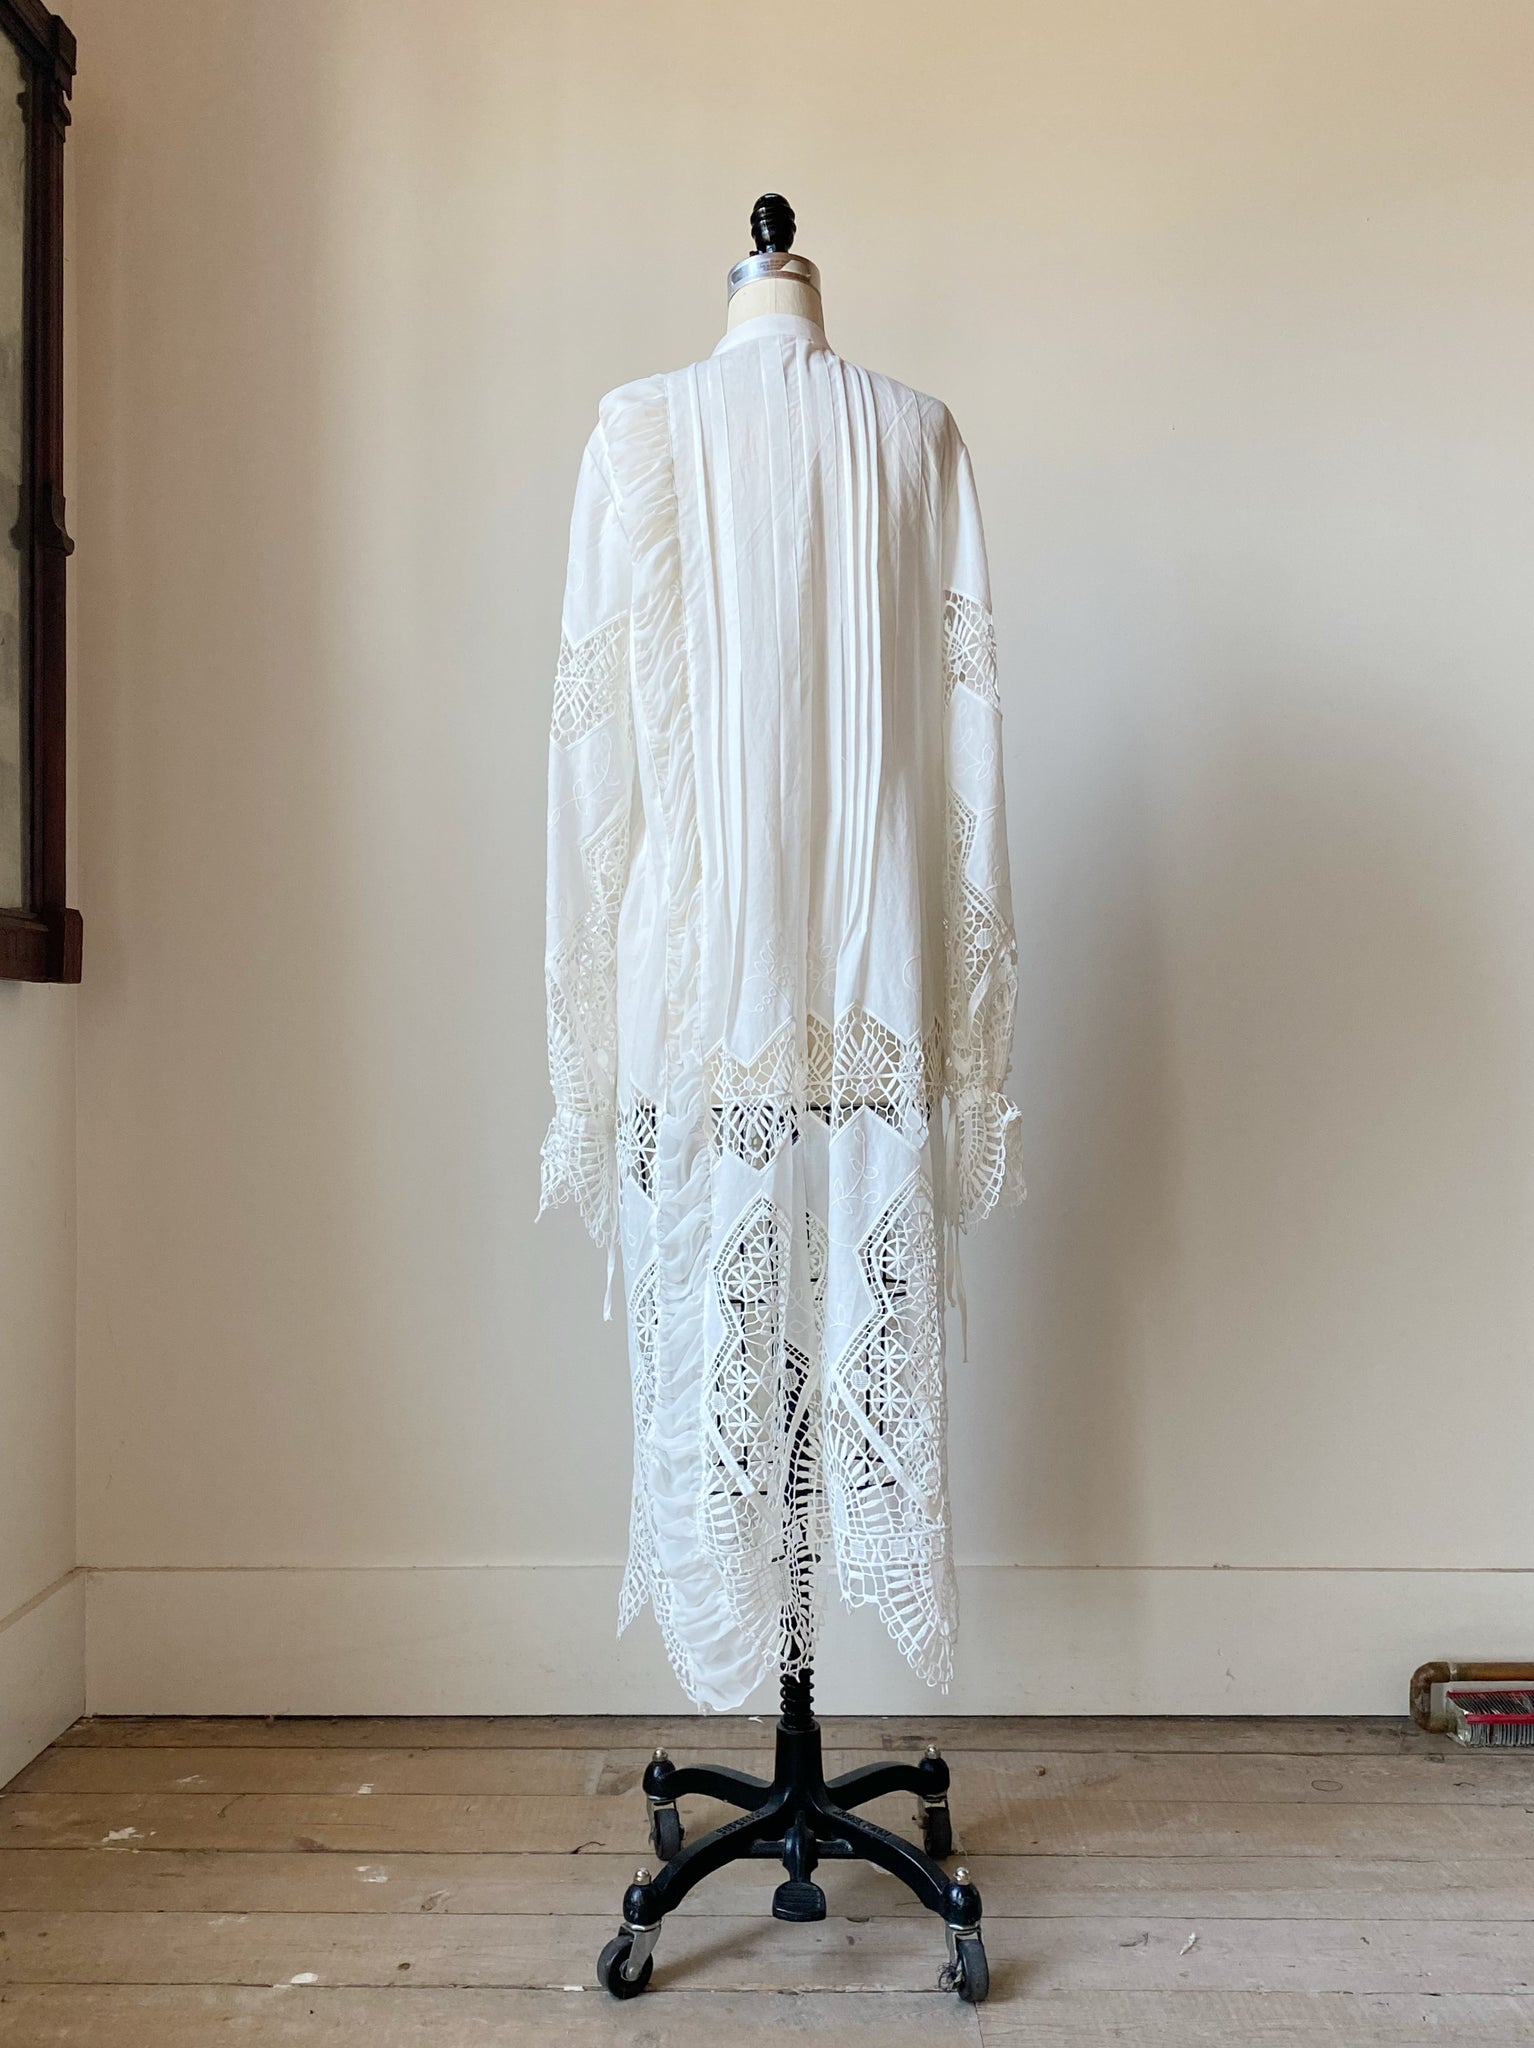 cotton voile lace shirt dress